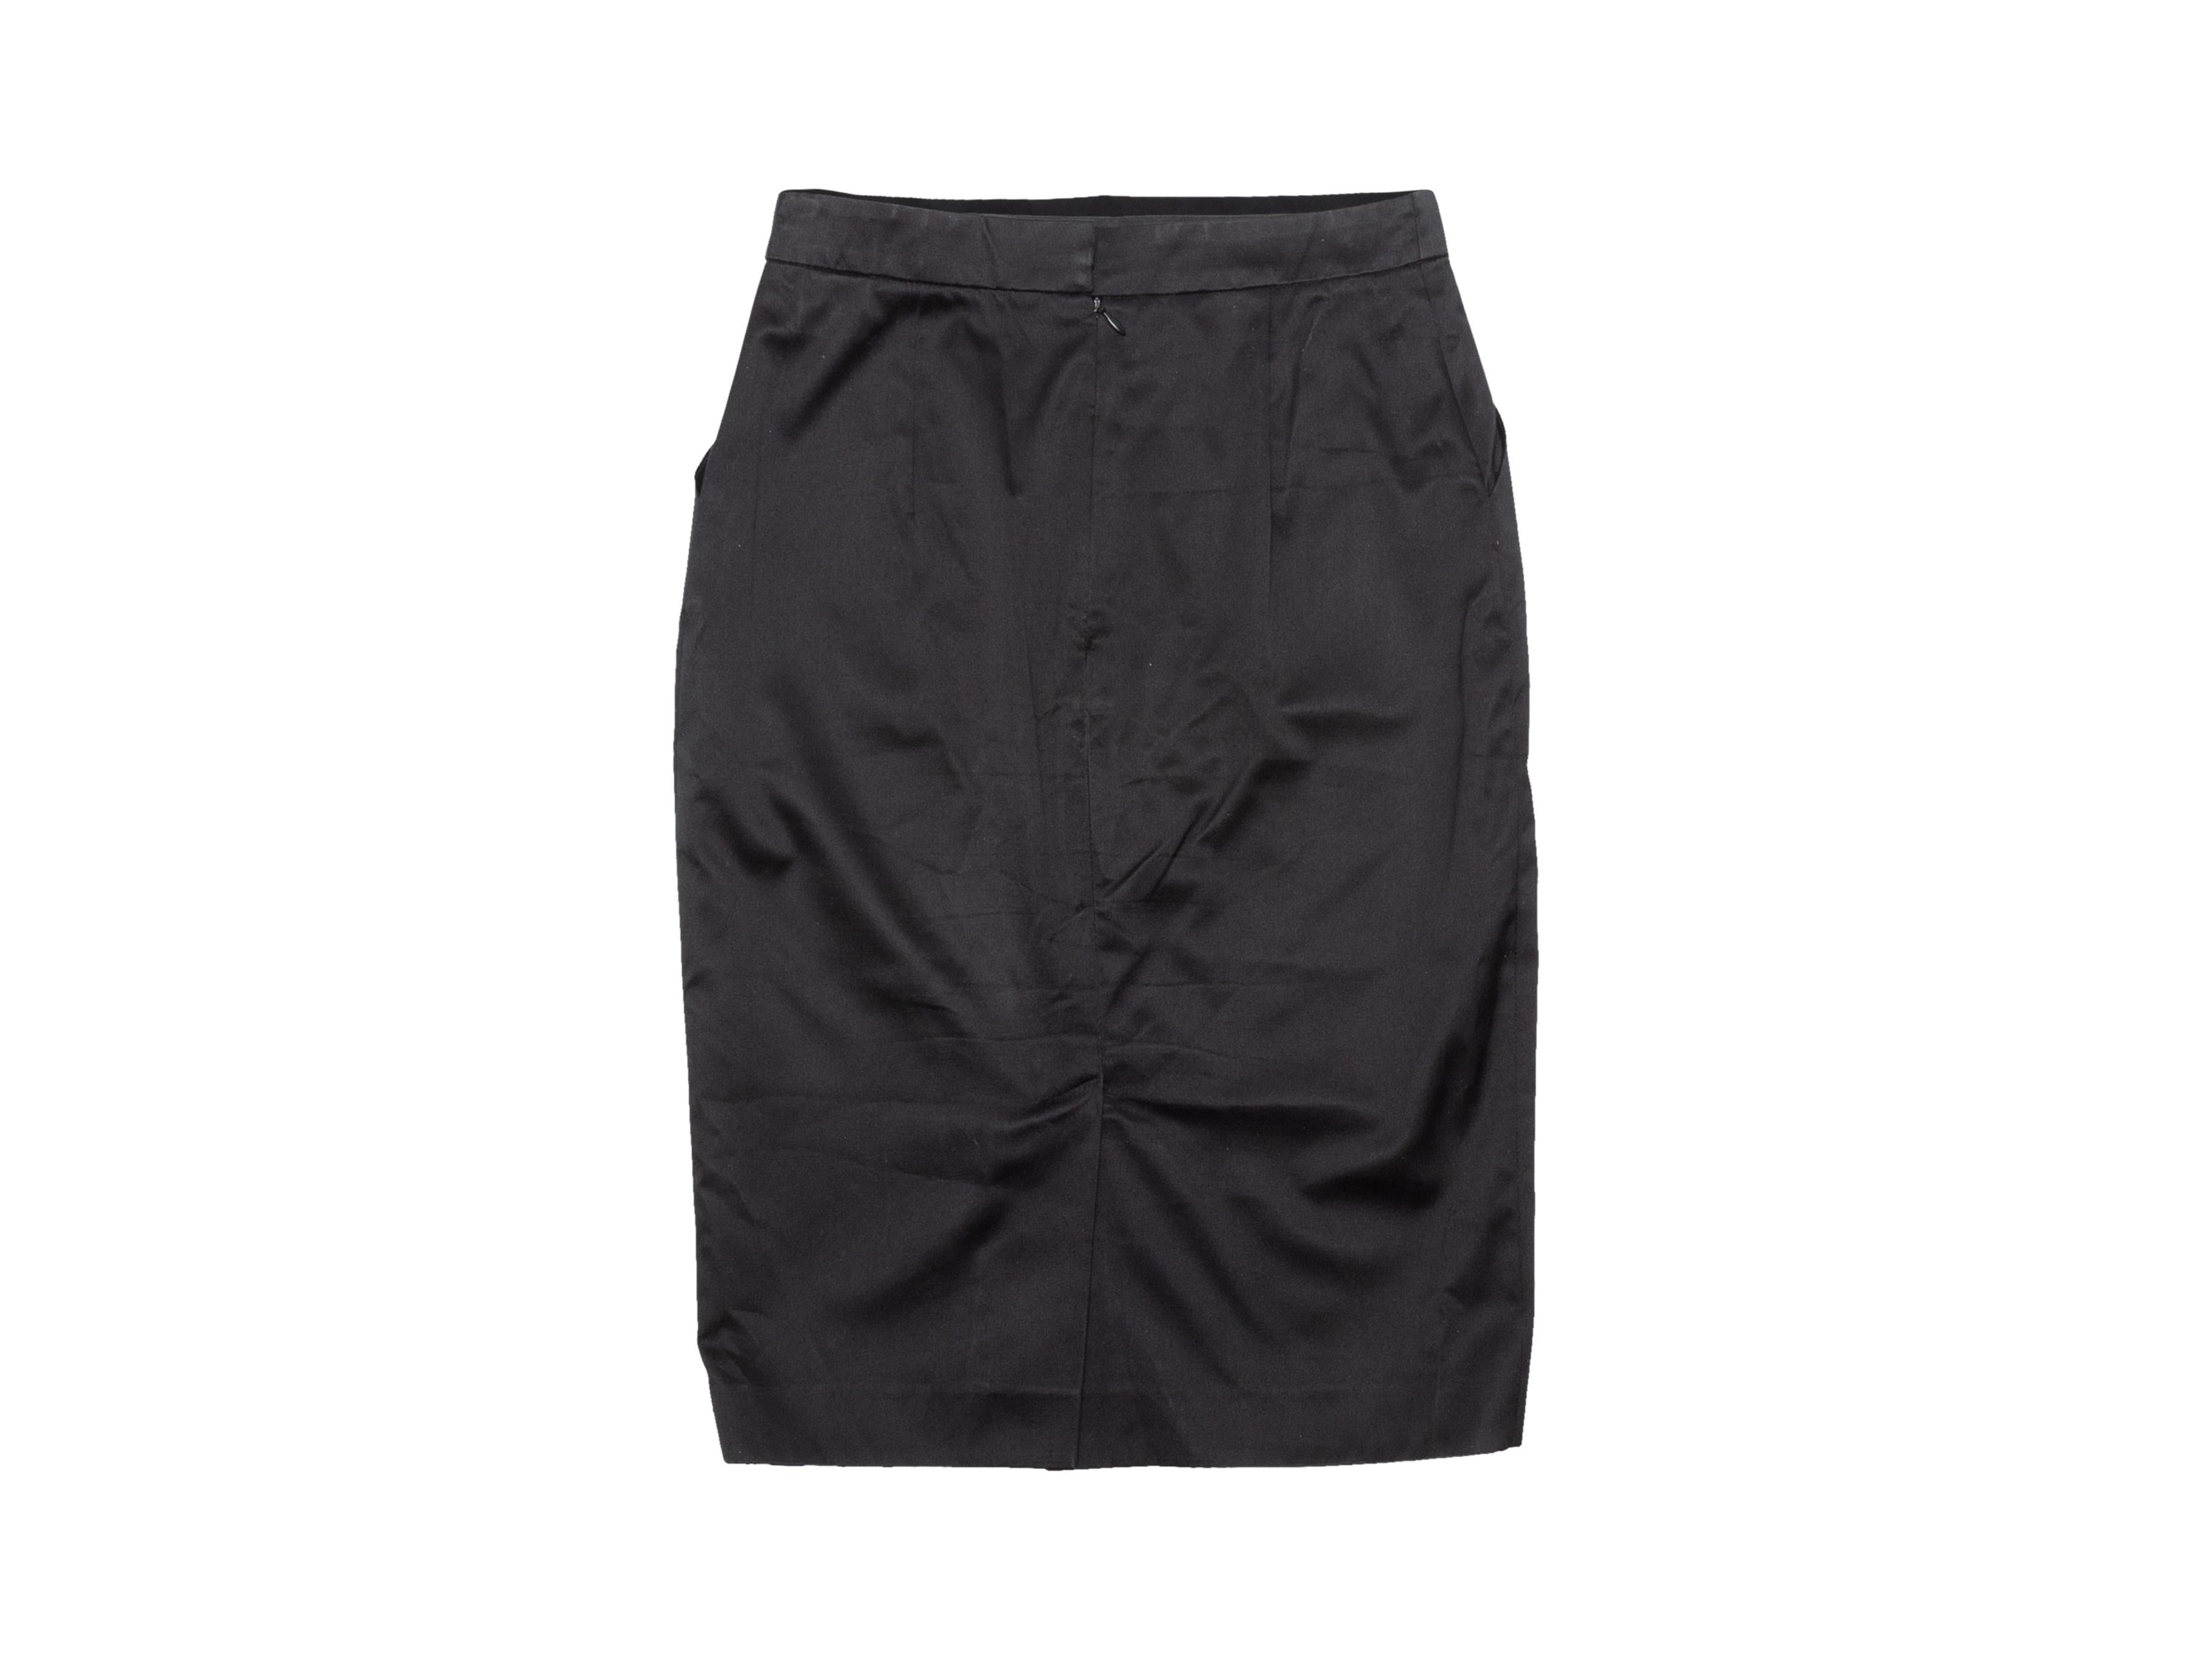 Product details: Vintage black silk knee-length pencil skirt by Hermes. Concealed zip closure at back. Designer size 34. 26